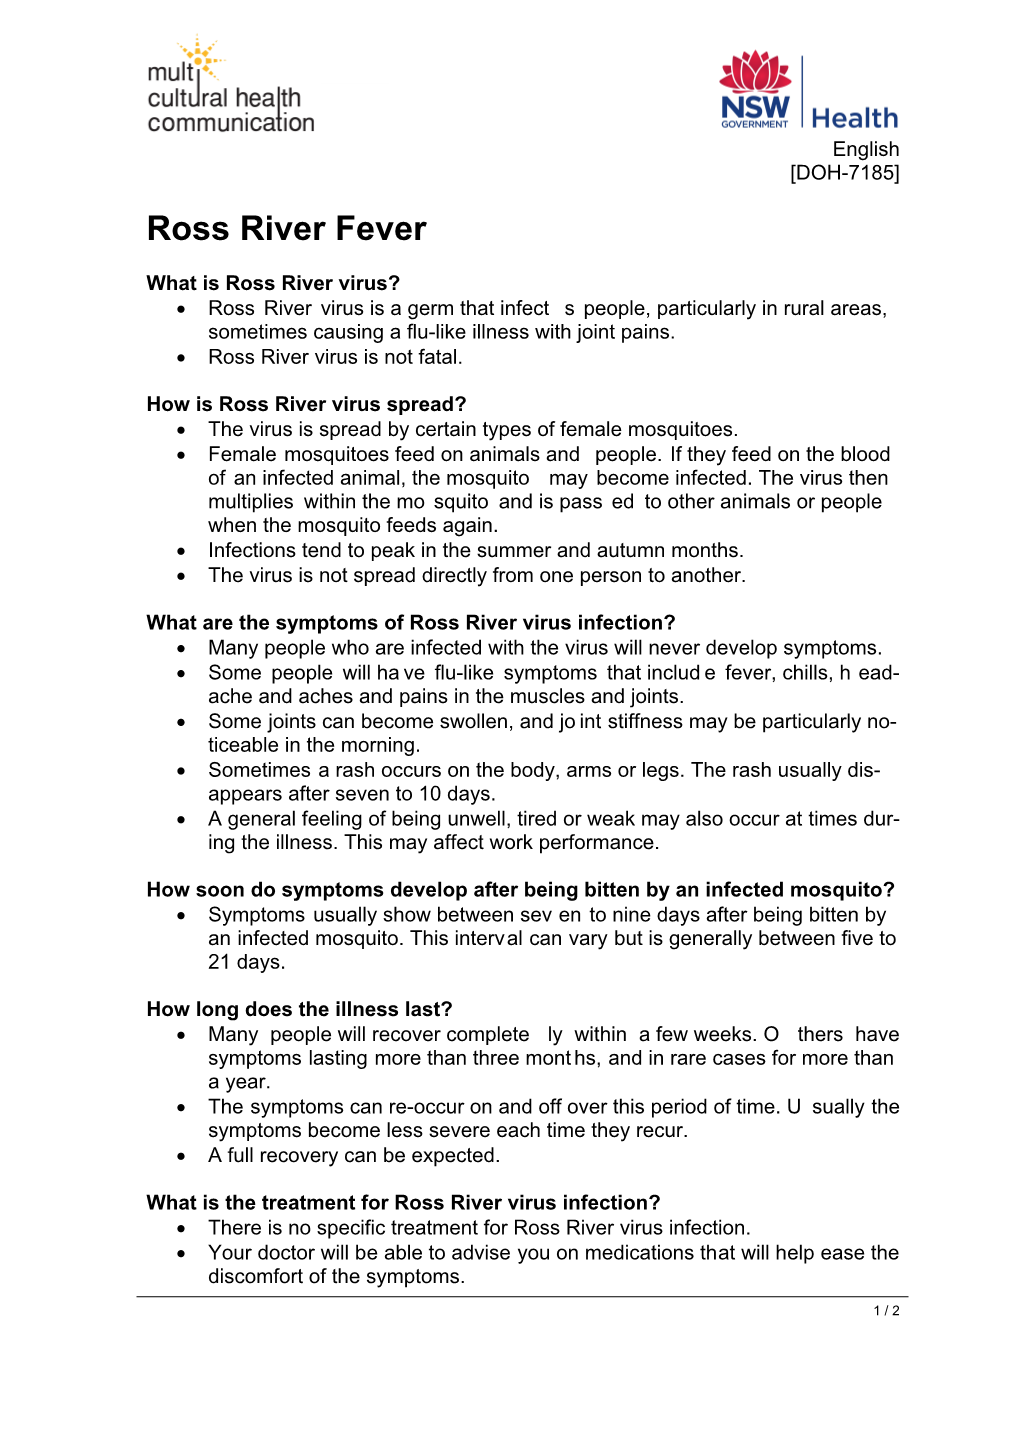 Ross River Fever